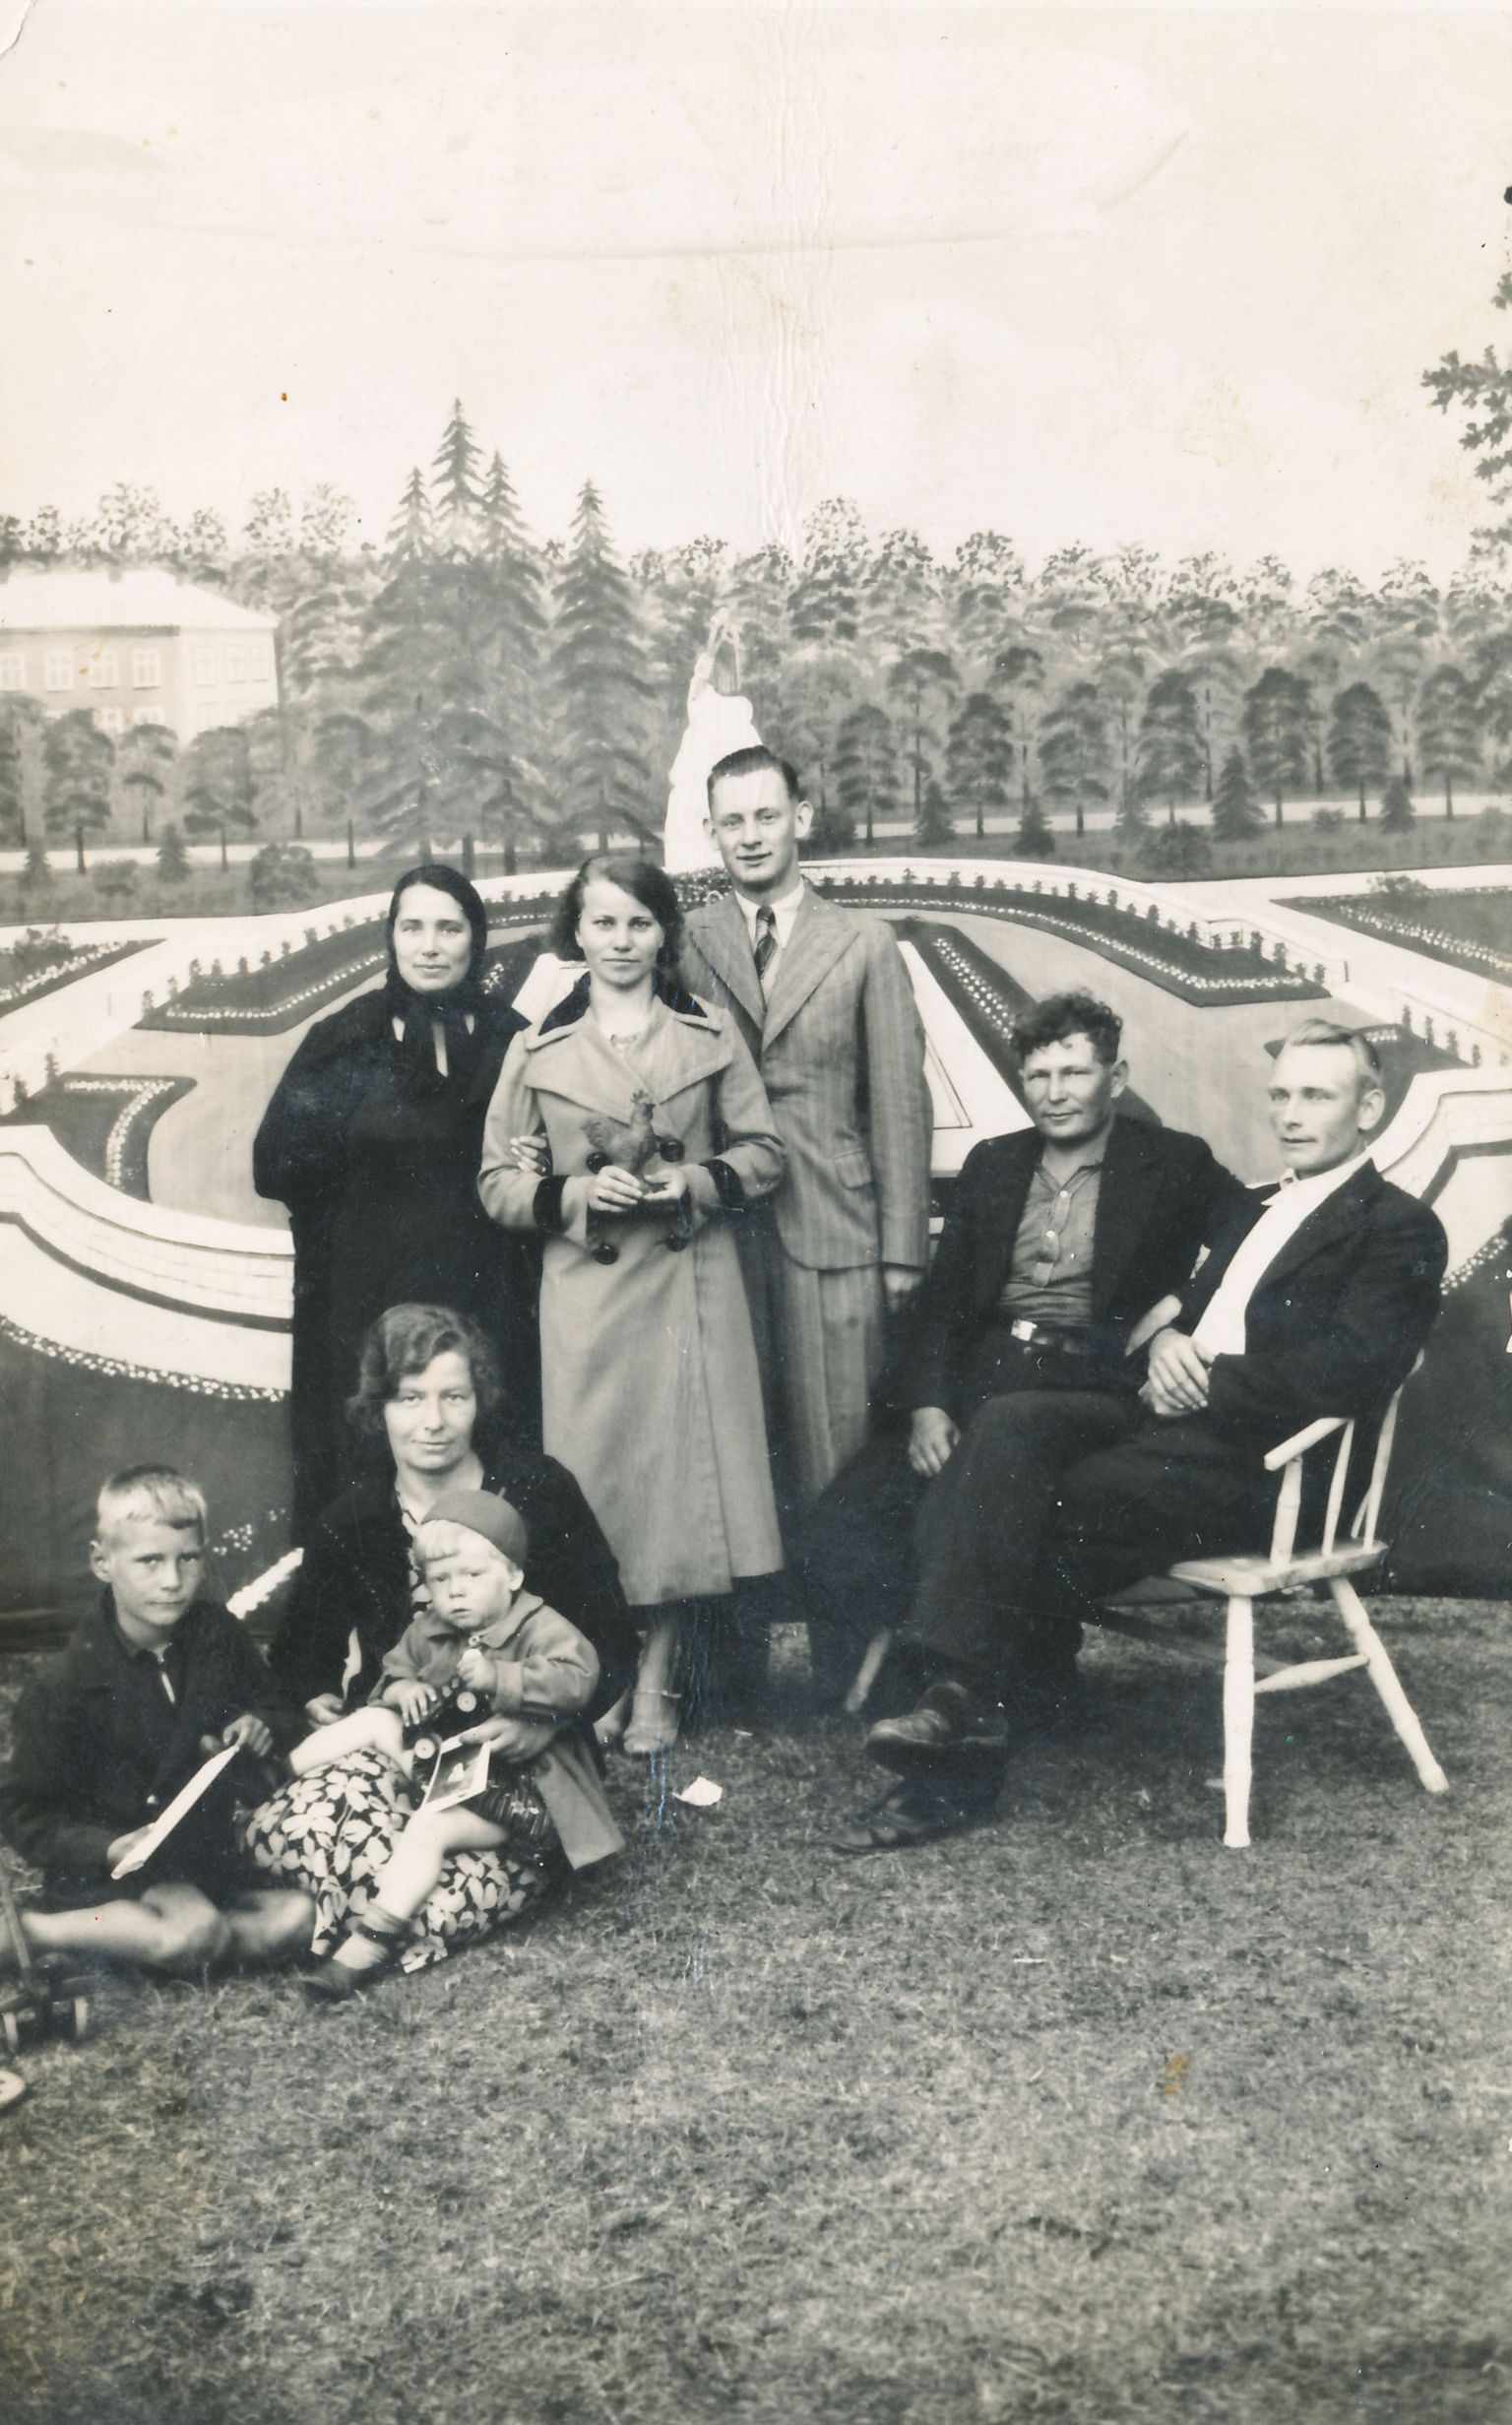 1939. AASTAL LAADAL: Istuvad Maria Kraus (alates 1941 Maria Liiv) ja vennad Harald ja Valdek (ema süles). Tagareas seisab keskel isa Arnold Kraus.